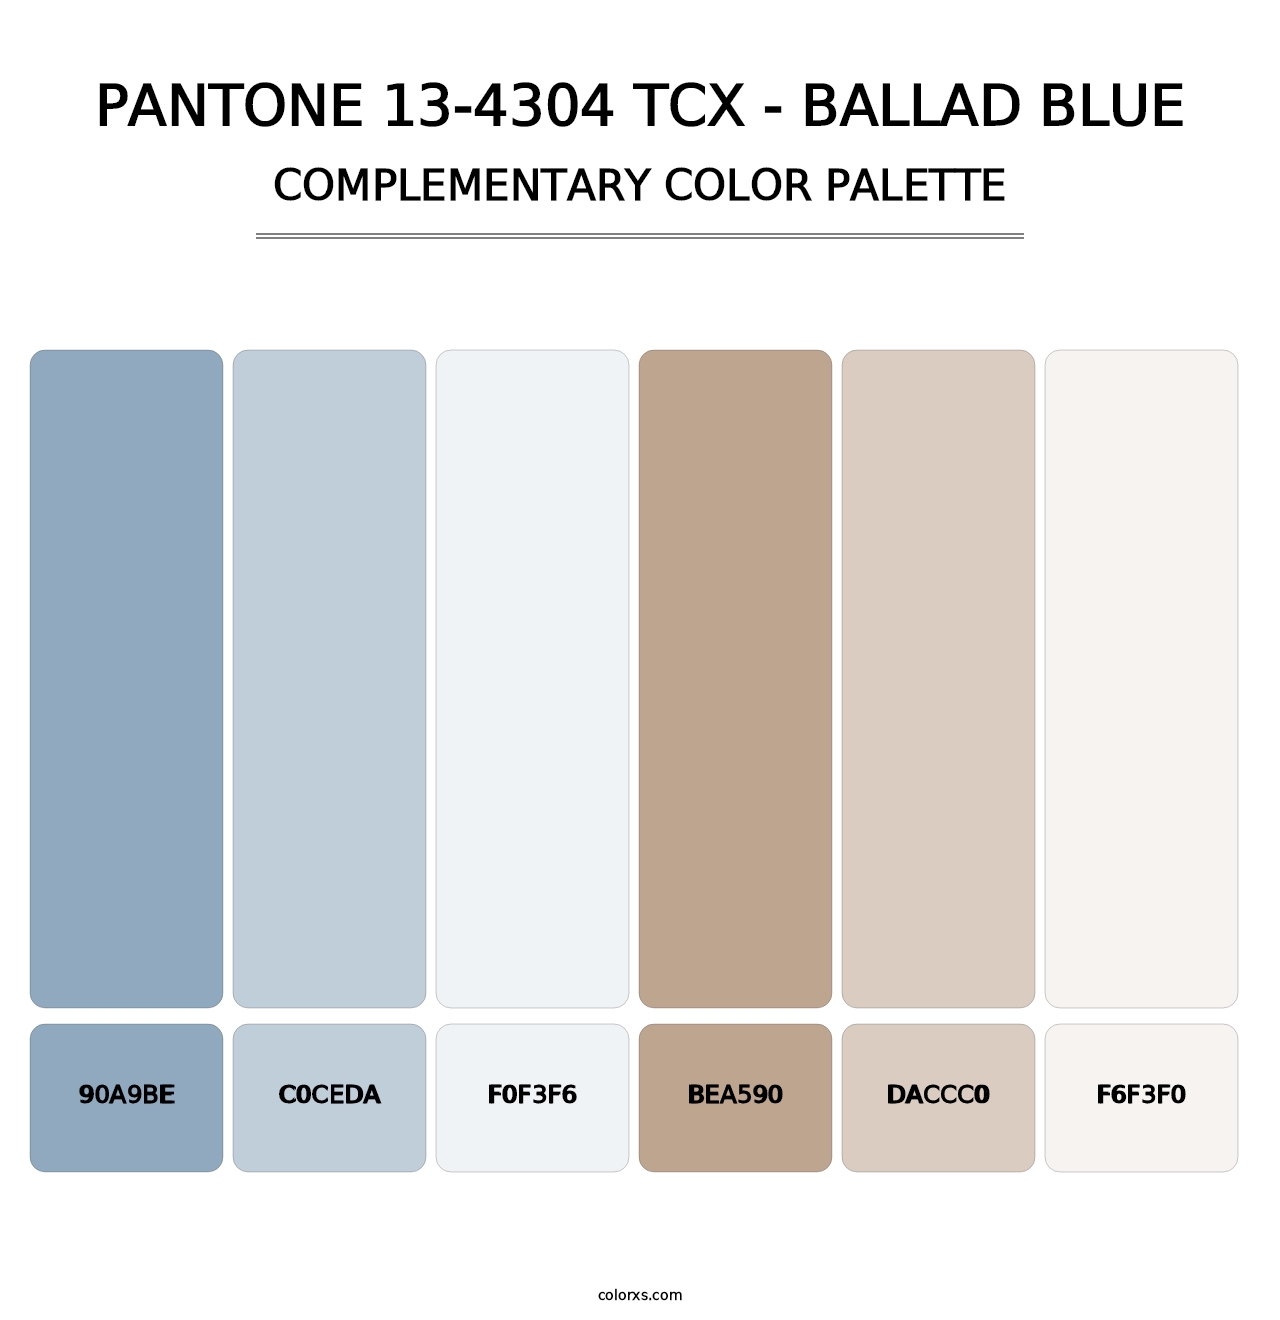 PANTONE 13-4304 TCX - Ballad Blue - Complementary Color Palette